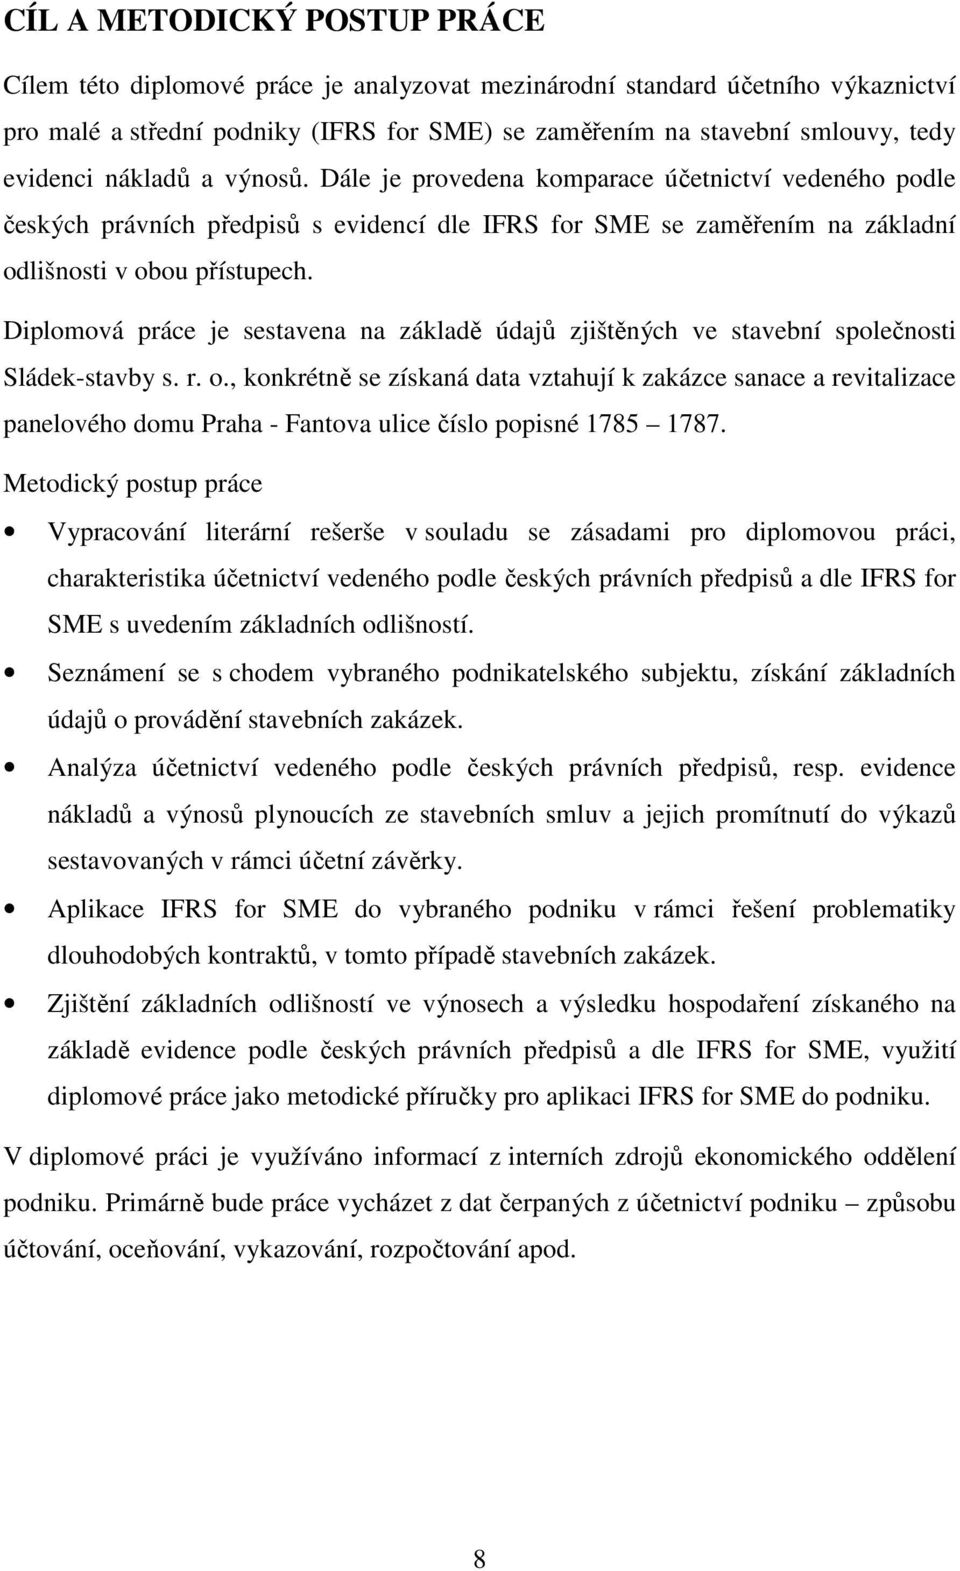 Diplomová práce je sestavena na základě údajů zjištěných ve stavební společnosti Sládek-stavby s. r. o.